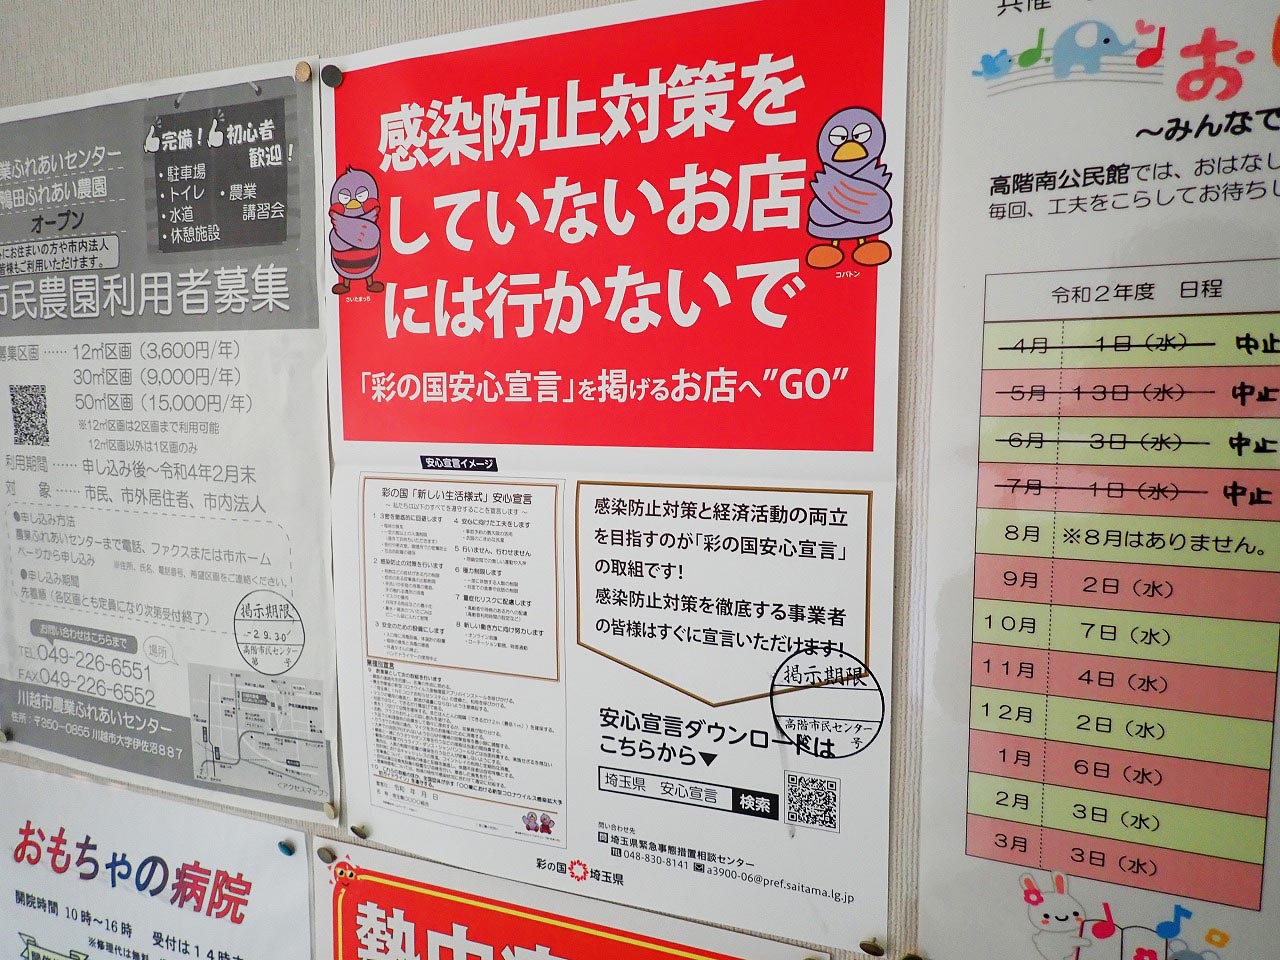 埼玉県の「彩の国安心宣言」を掲げるお店にGOの案内